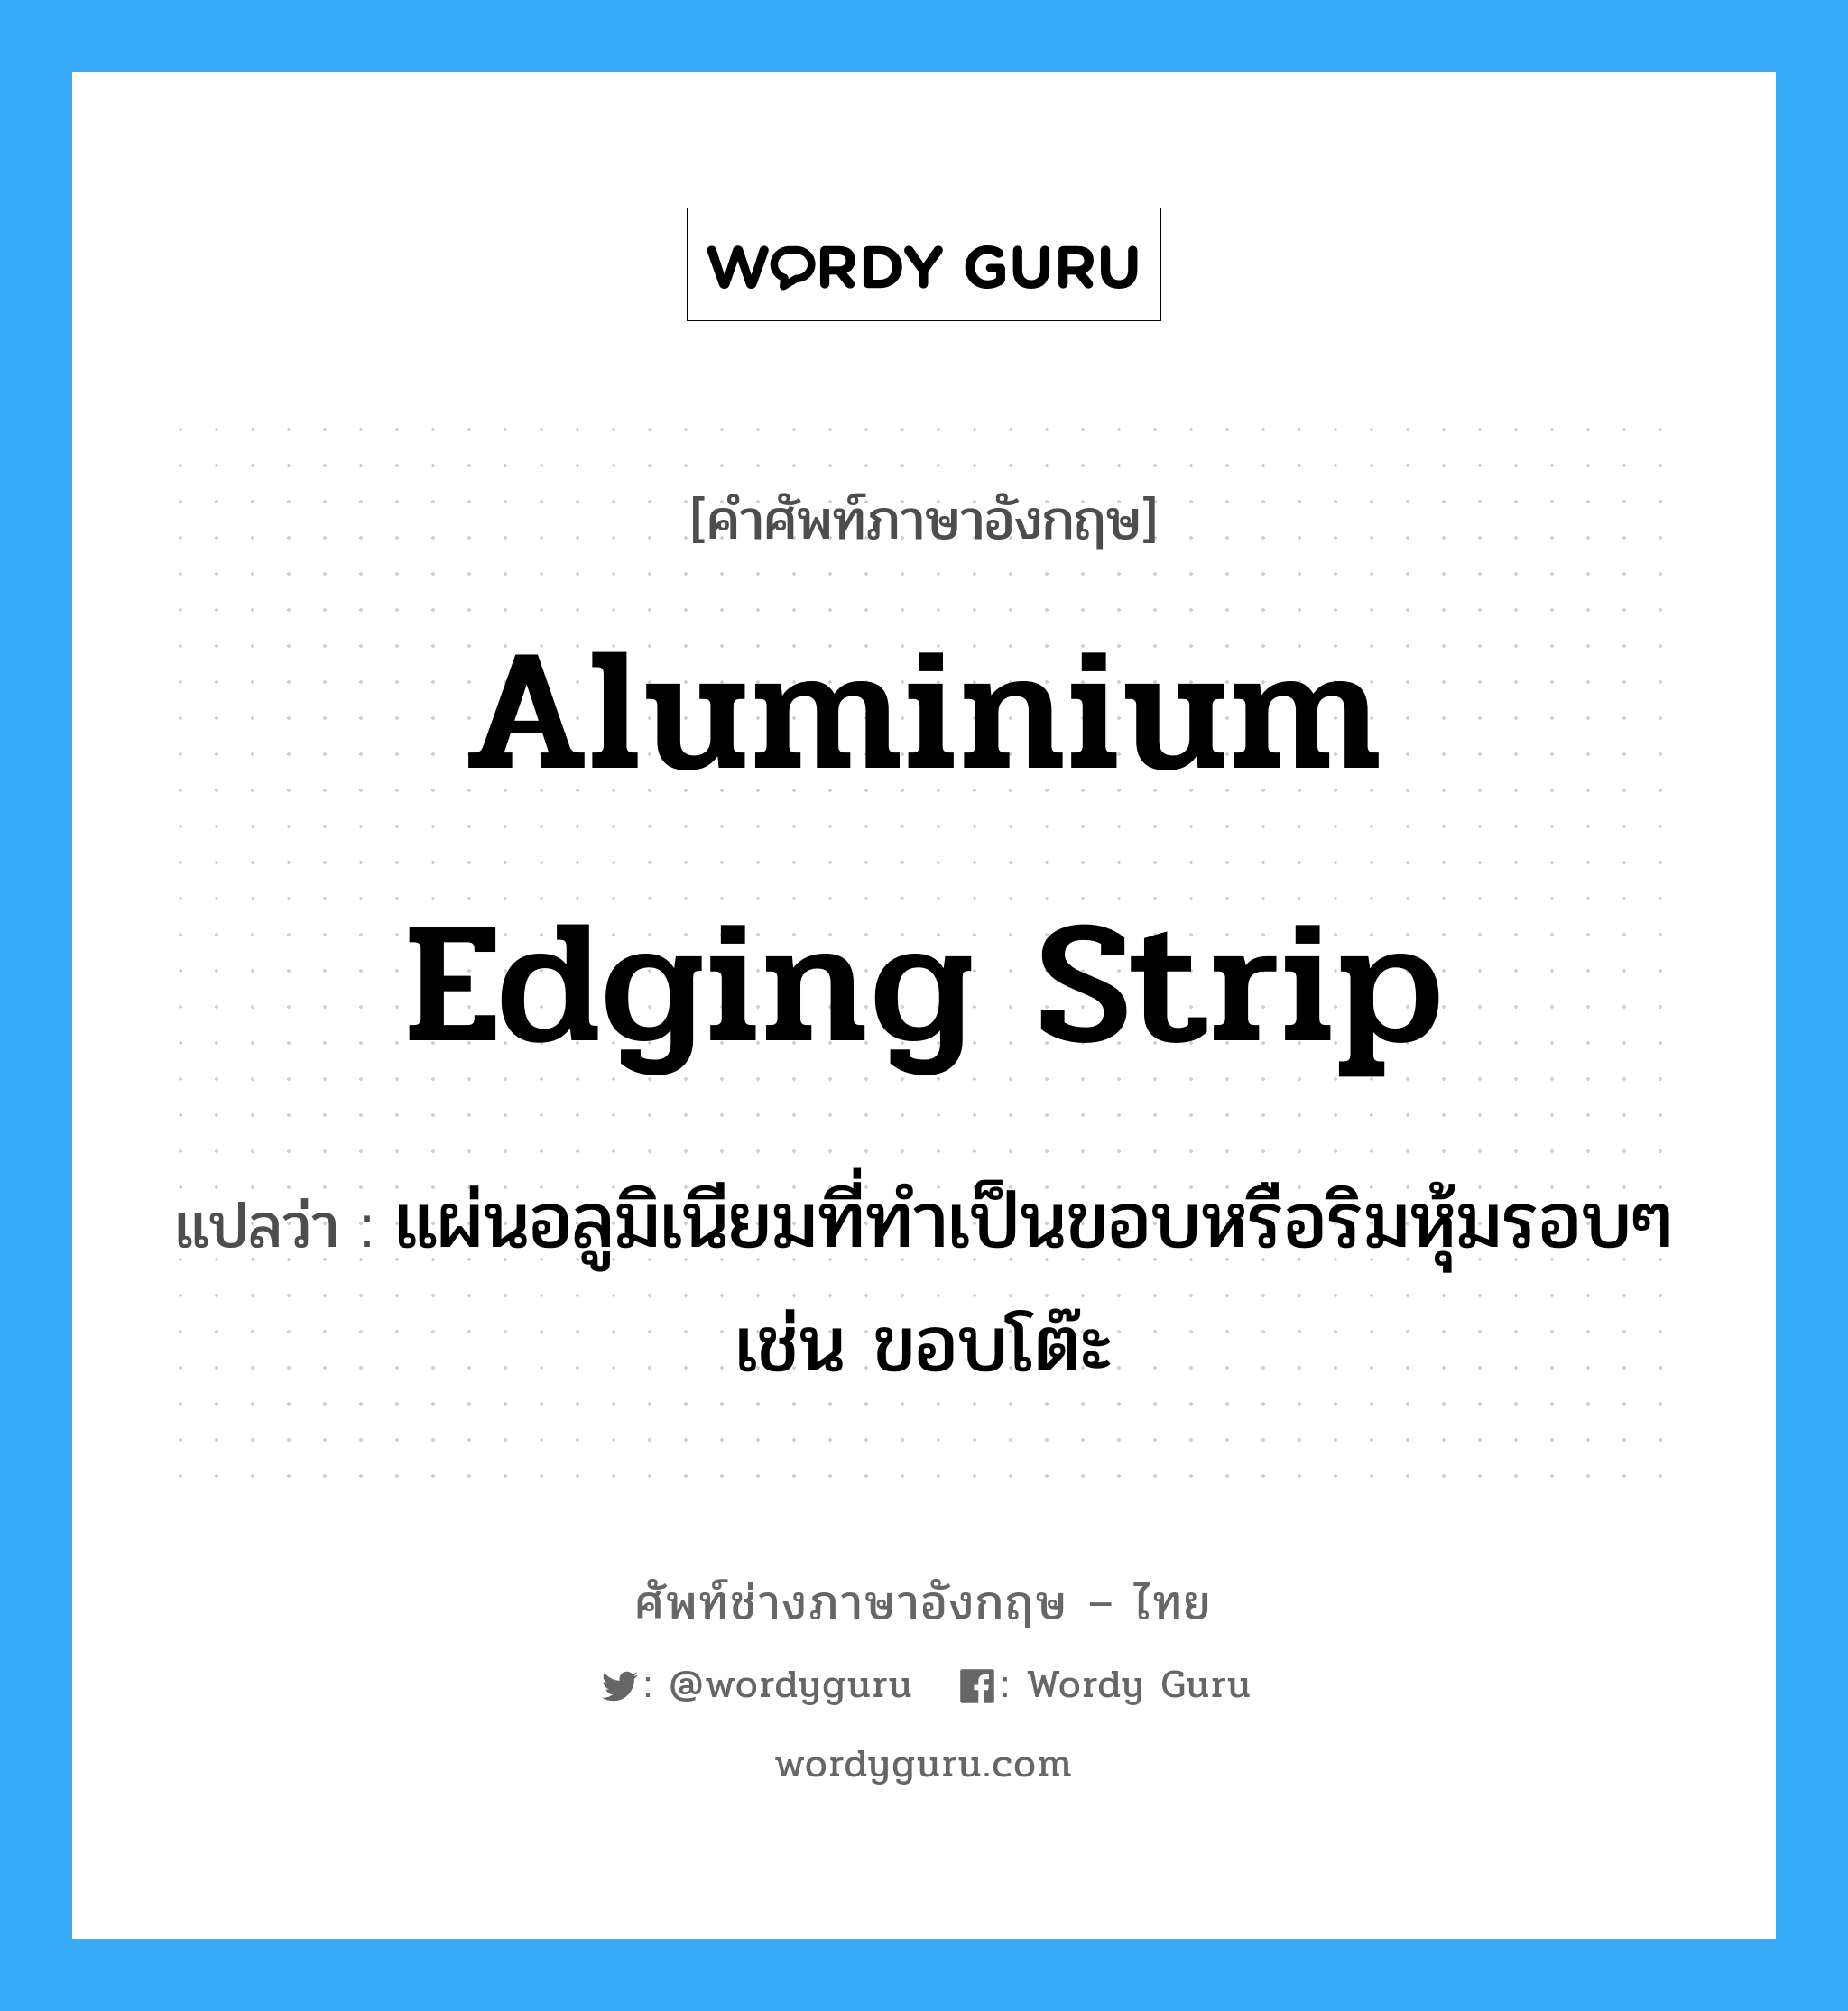 aluminium edging strip แปลว่า?, คำศัพท์ช่างภาษาอังกฤษ - ไทย aluminium edging strip คำศัพท์ภาษาอังกฤษ aluminium edging strip แปลว่า แผ่นอลูมิเนียมที่ทำเป็นขอบหรือริมหุ้มรอบๆ เช่น ขอบโต๊ะ